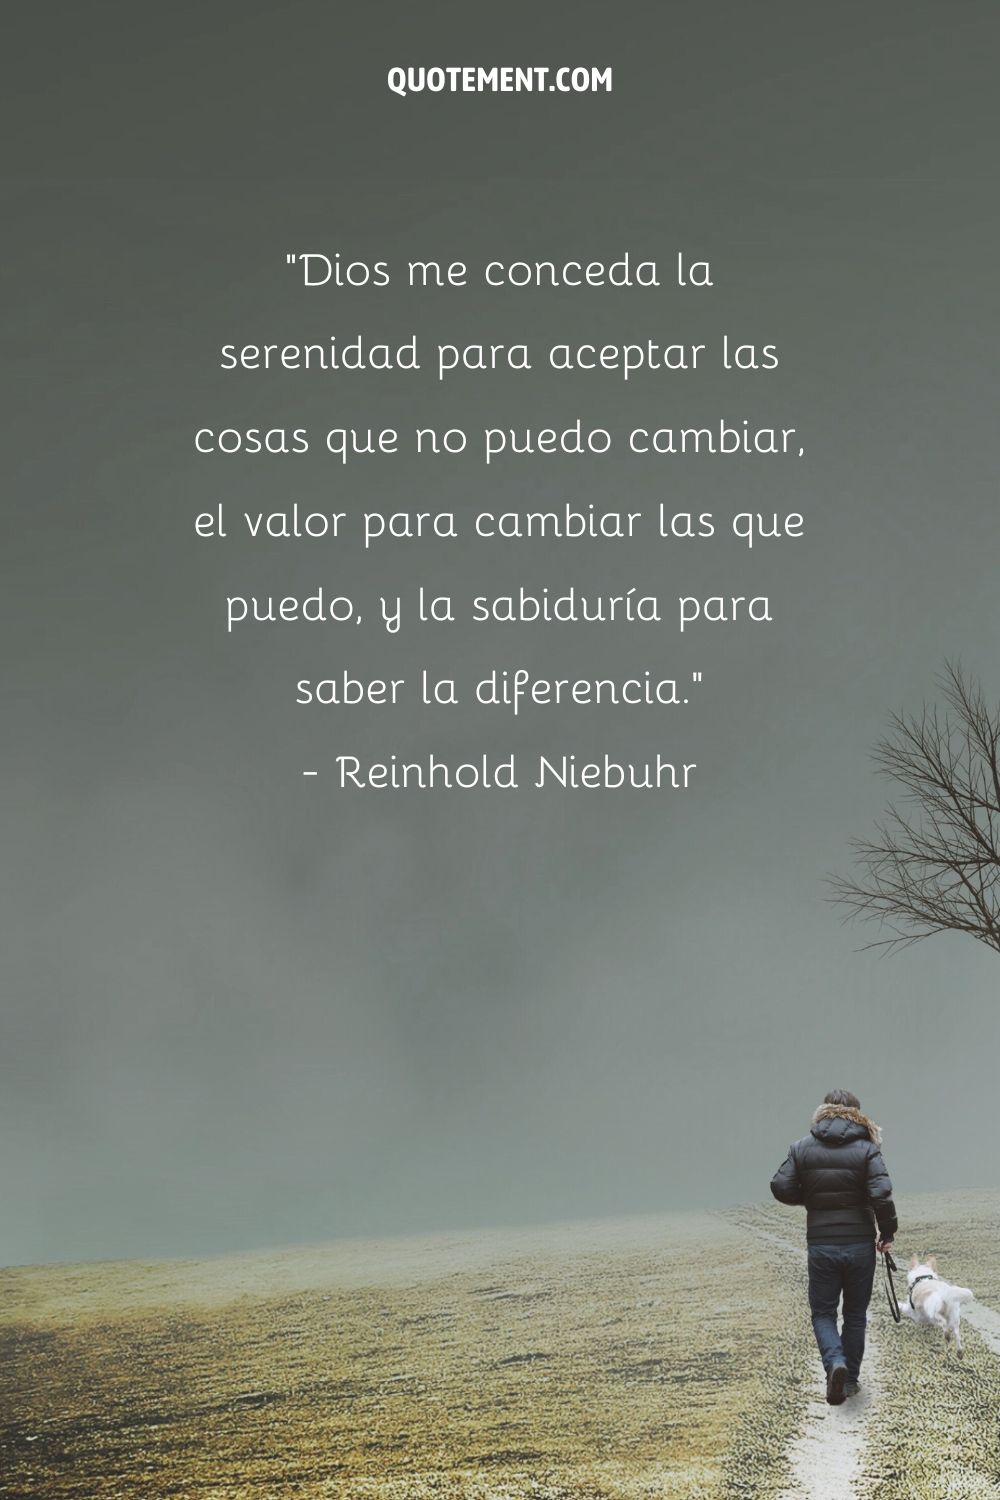 "Dios me conceda la serenidad para aceptar las cosas que no puedo cambiar, el valor para cambiar las que puedo, y la sabiduría para saber la diferencia". - Reinhold Niebuhr